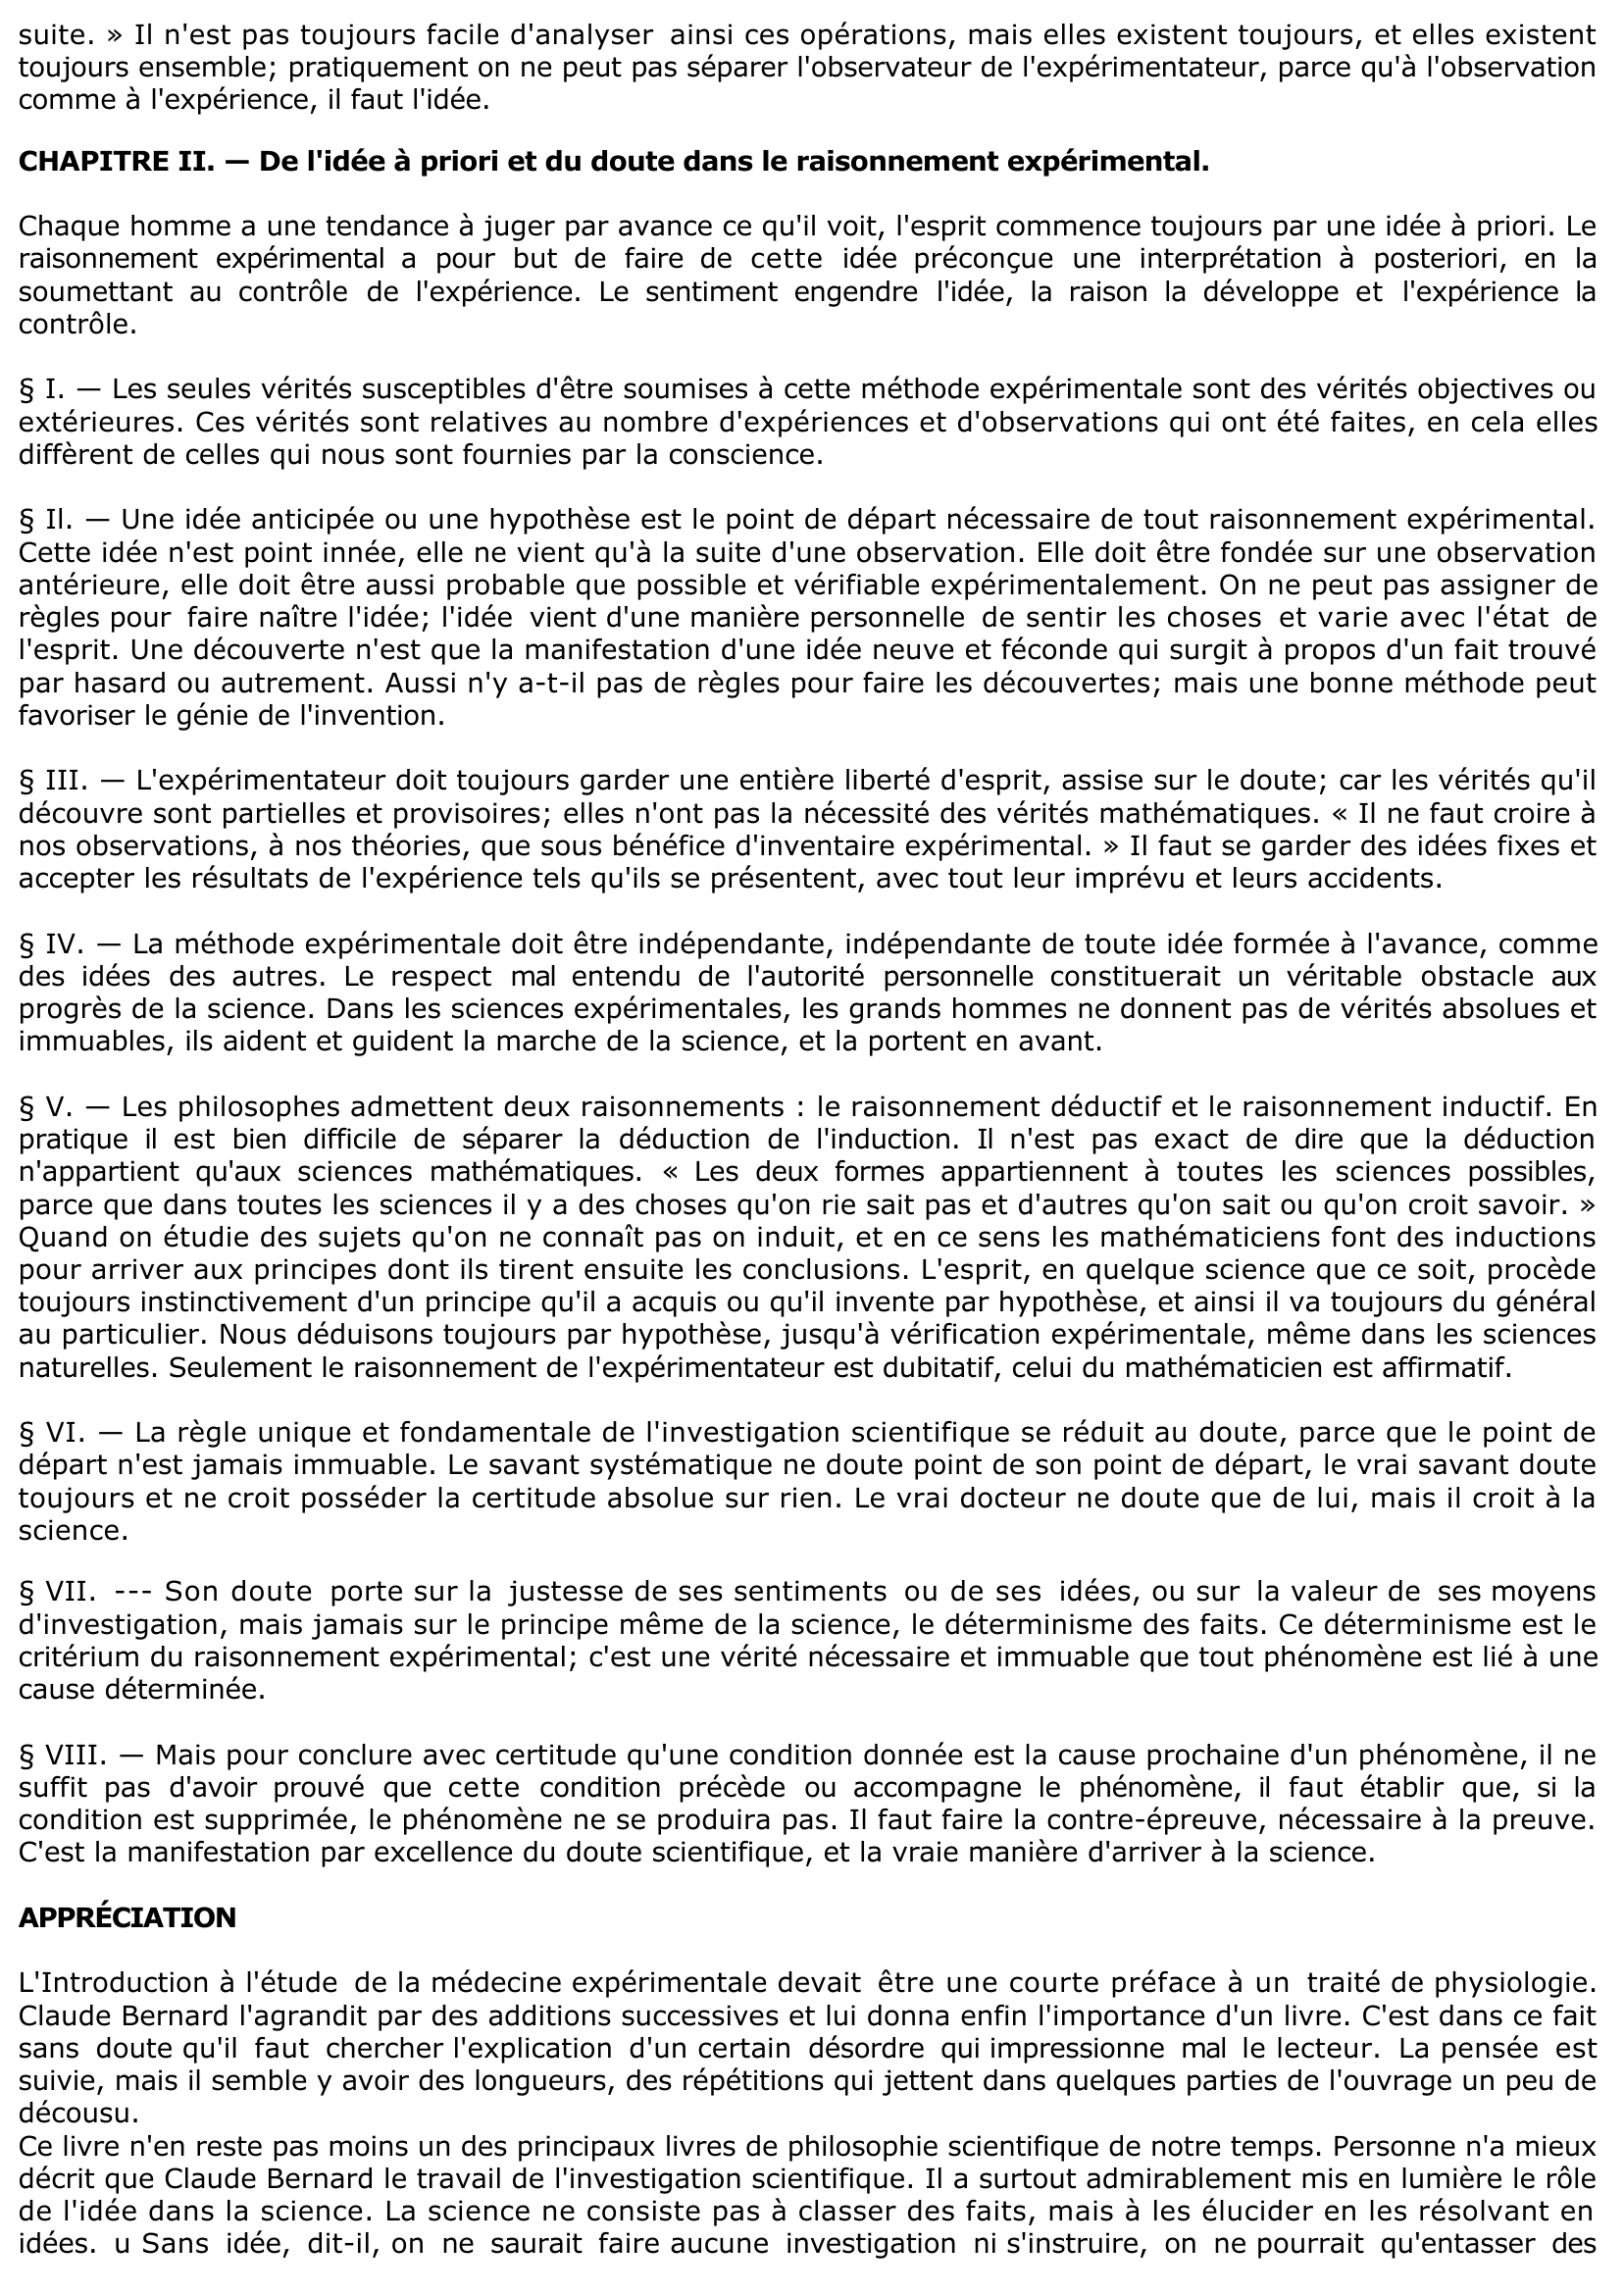 Prévisualisation du document ANALYSE DE L' "INTRODUCTION A L'ÉTUDE DE LA MÉDECINE EXPÉRIMENTALE" DE CLAUDE BERNARD.	?